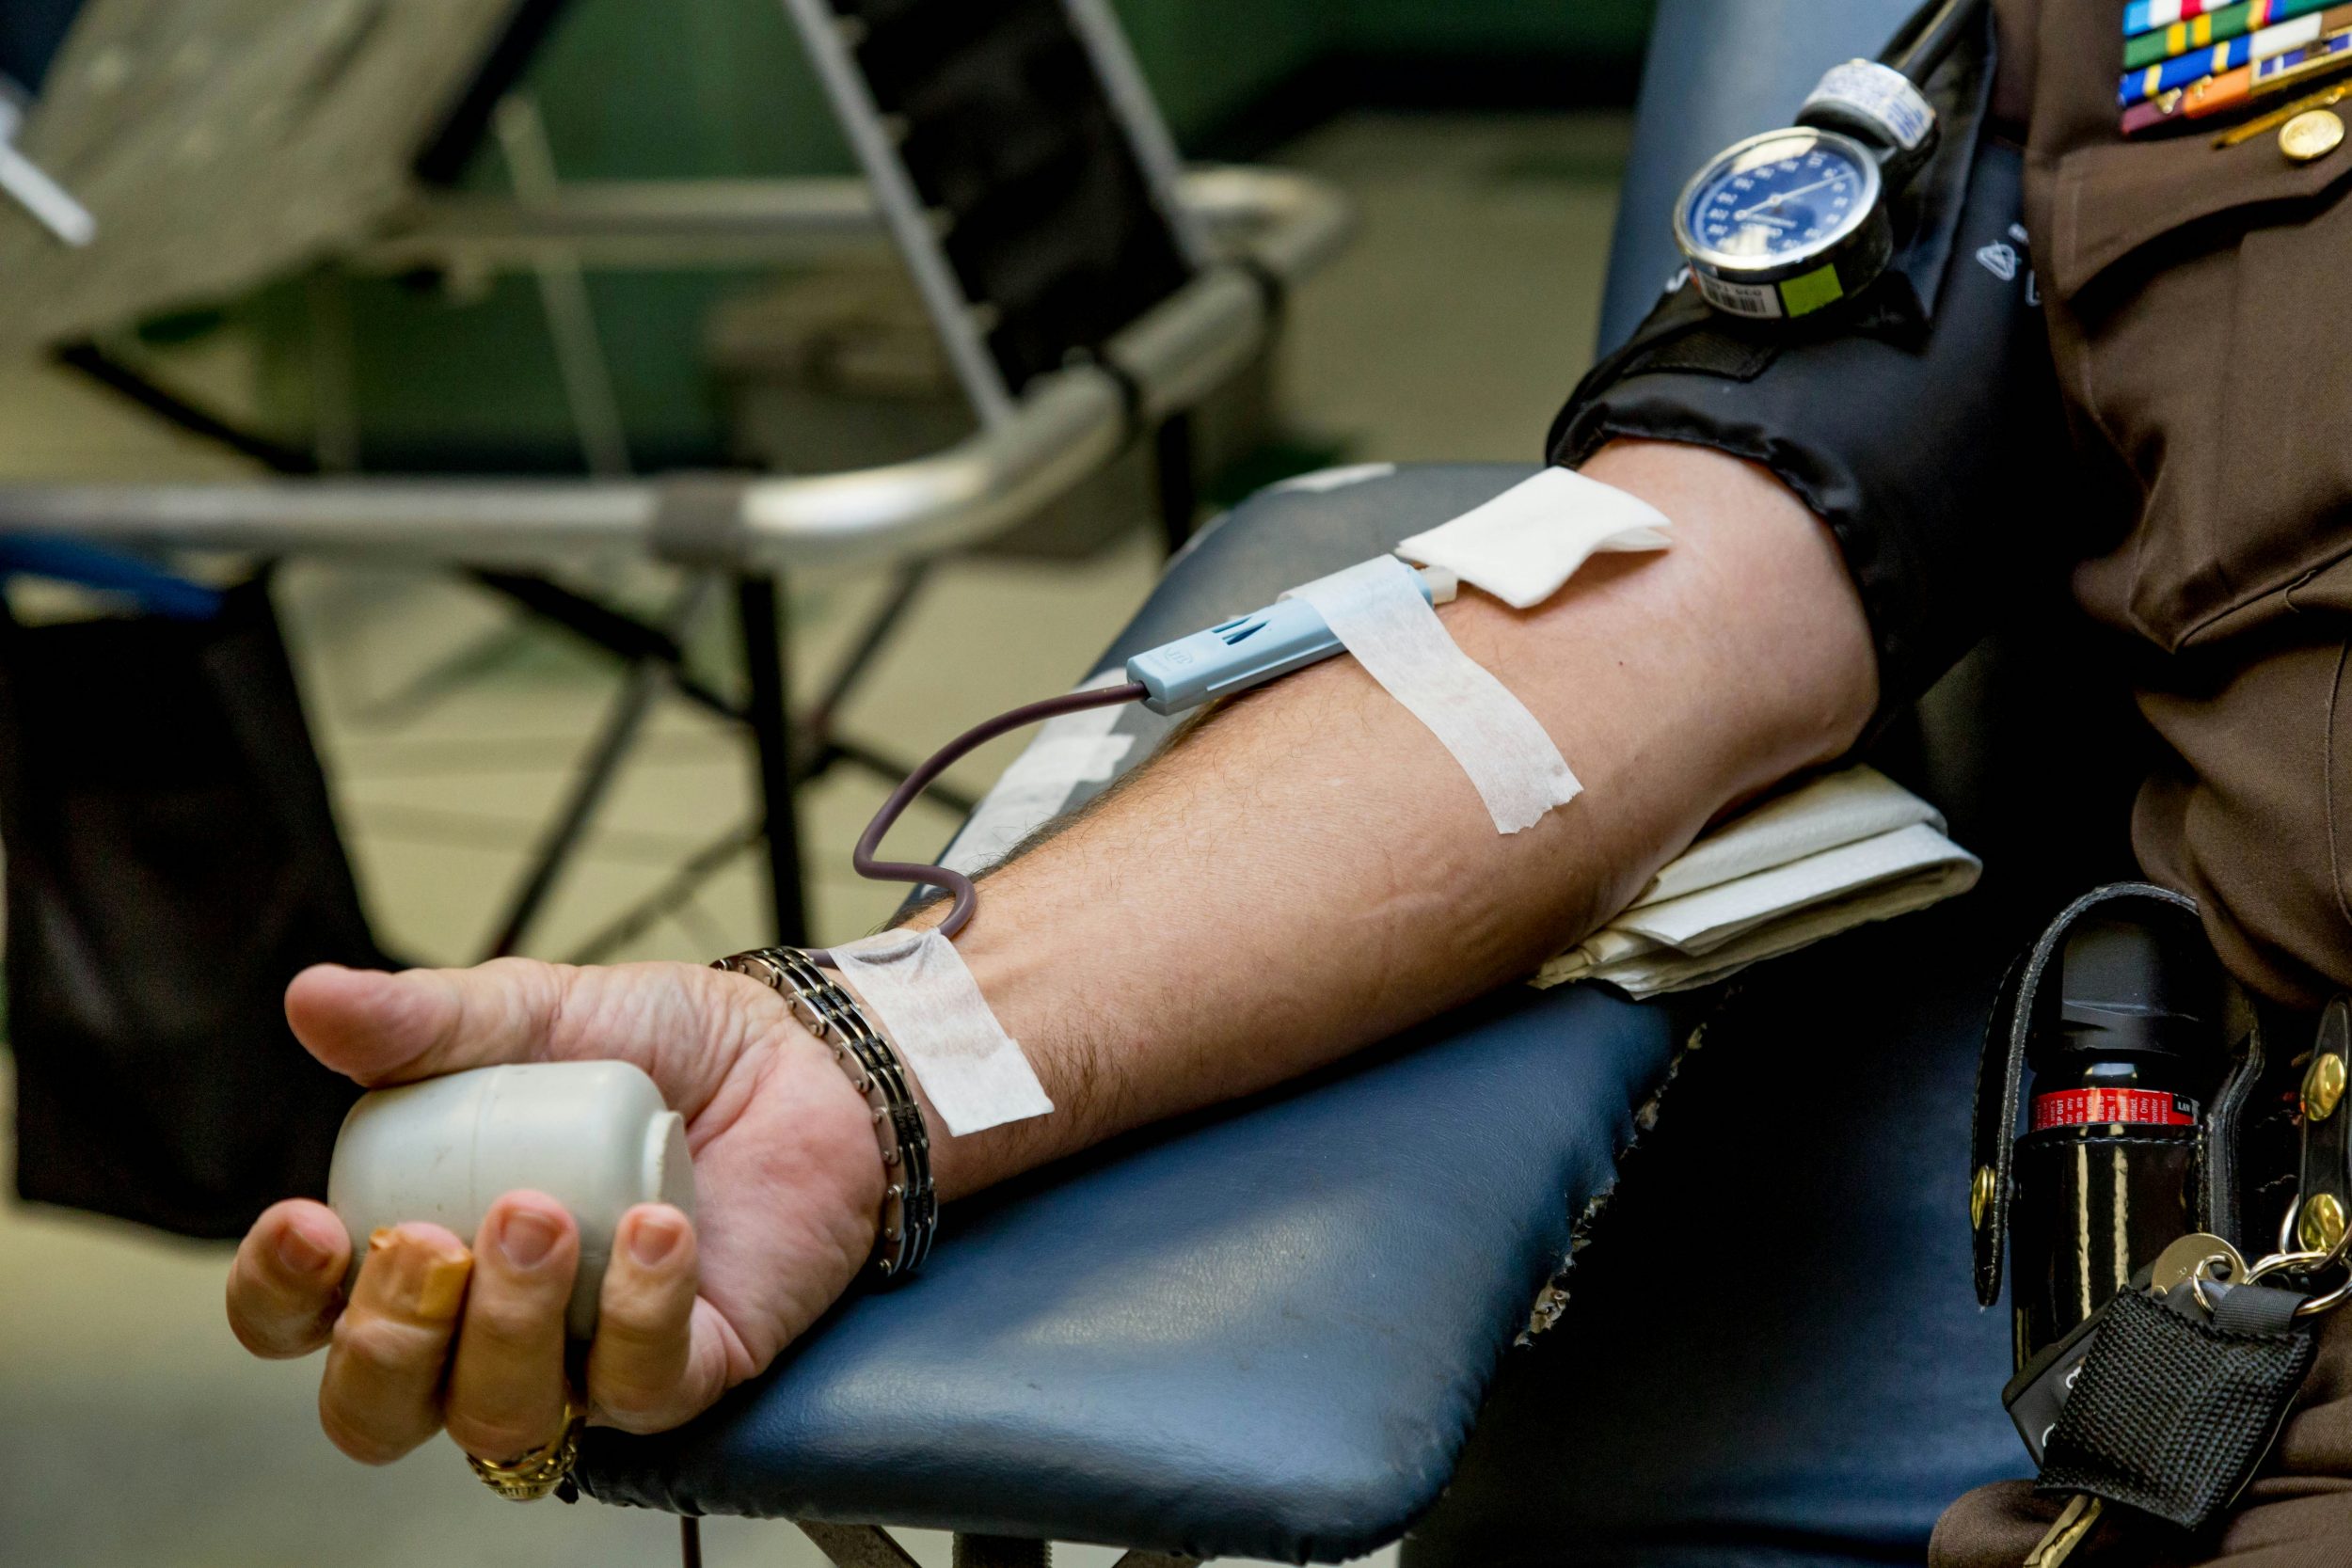 La Giornata Mondiale del Donatore di Sangue è una ricorrenza fondamentale per fare il punto sui dati della donazione di sangue in Italia.